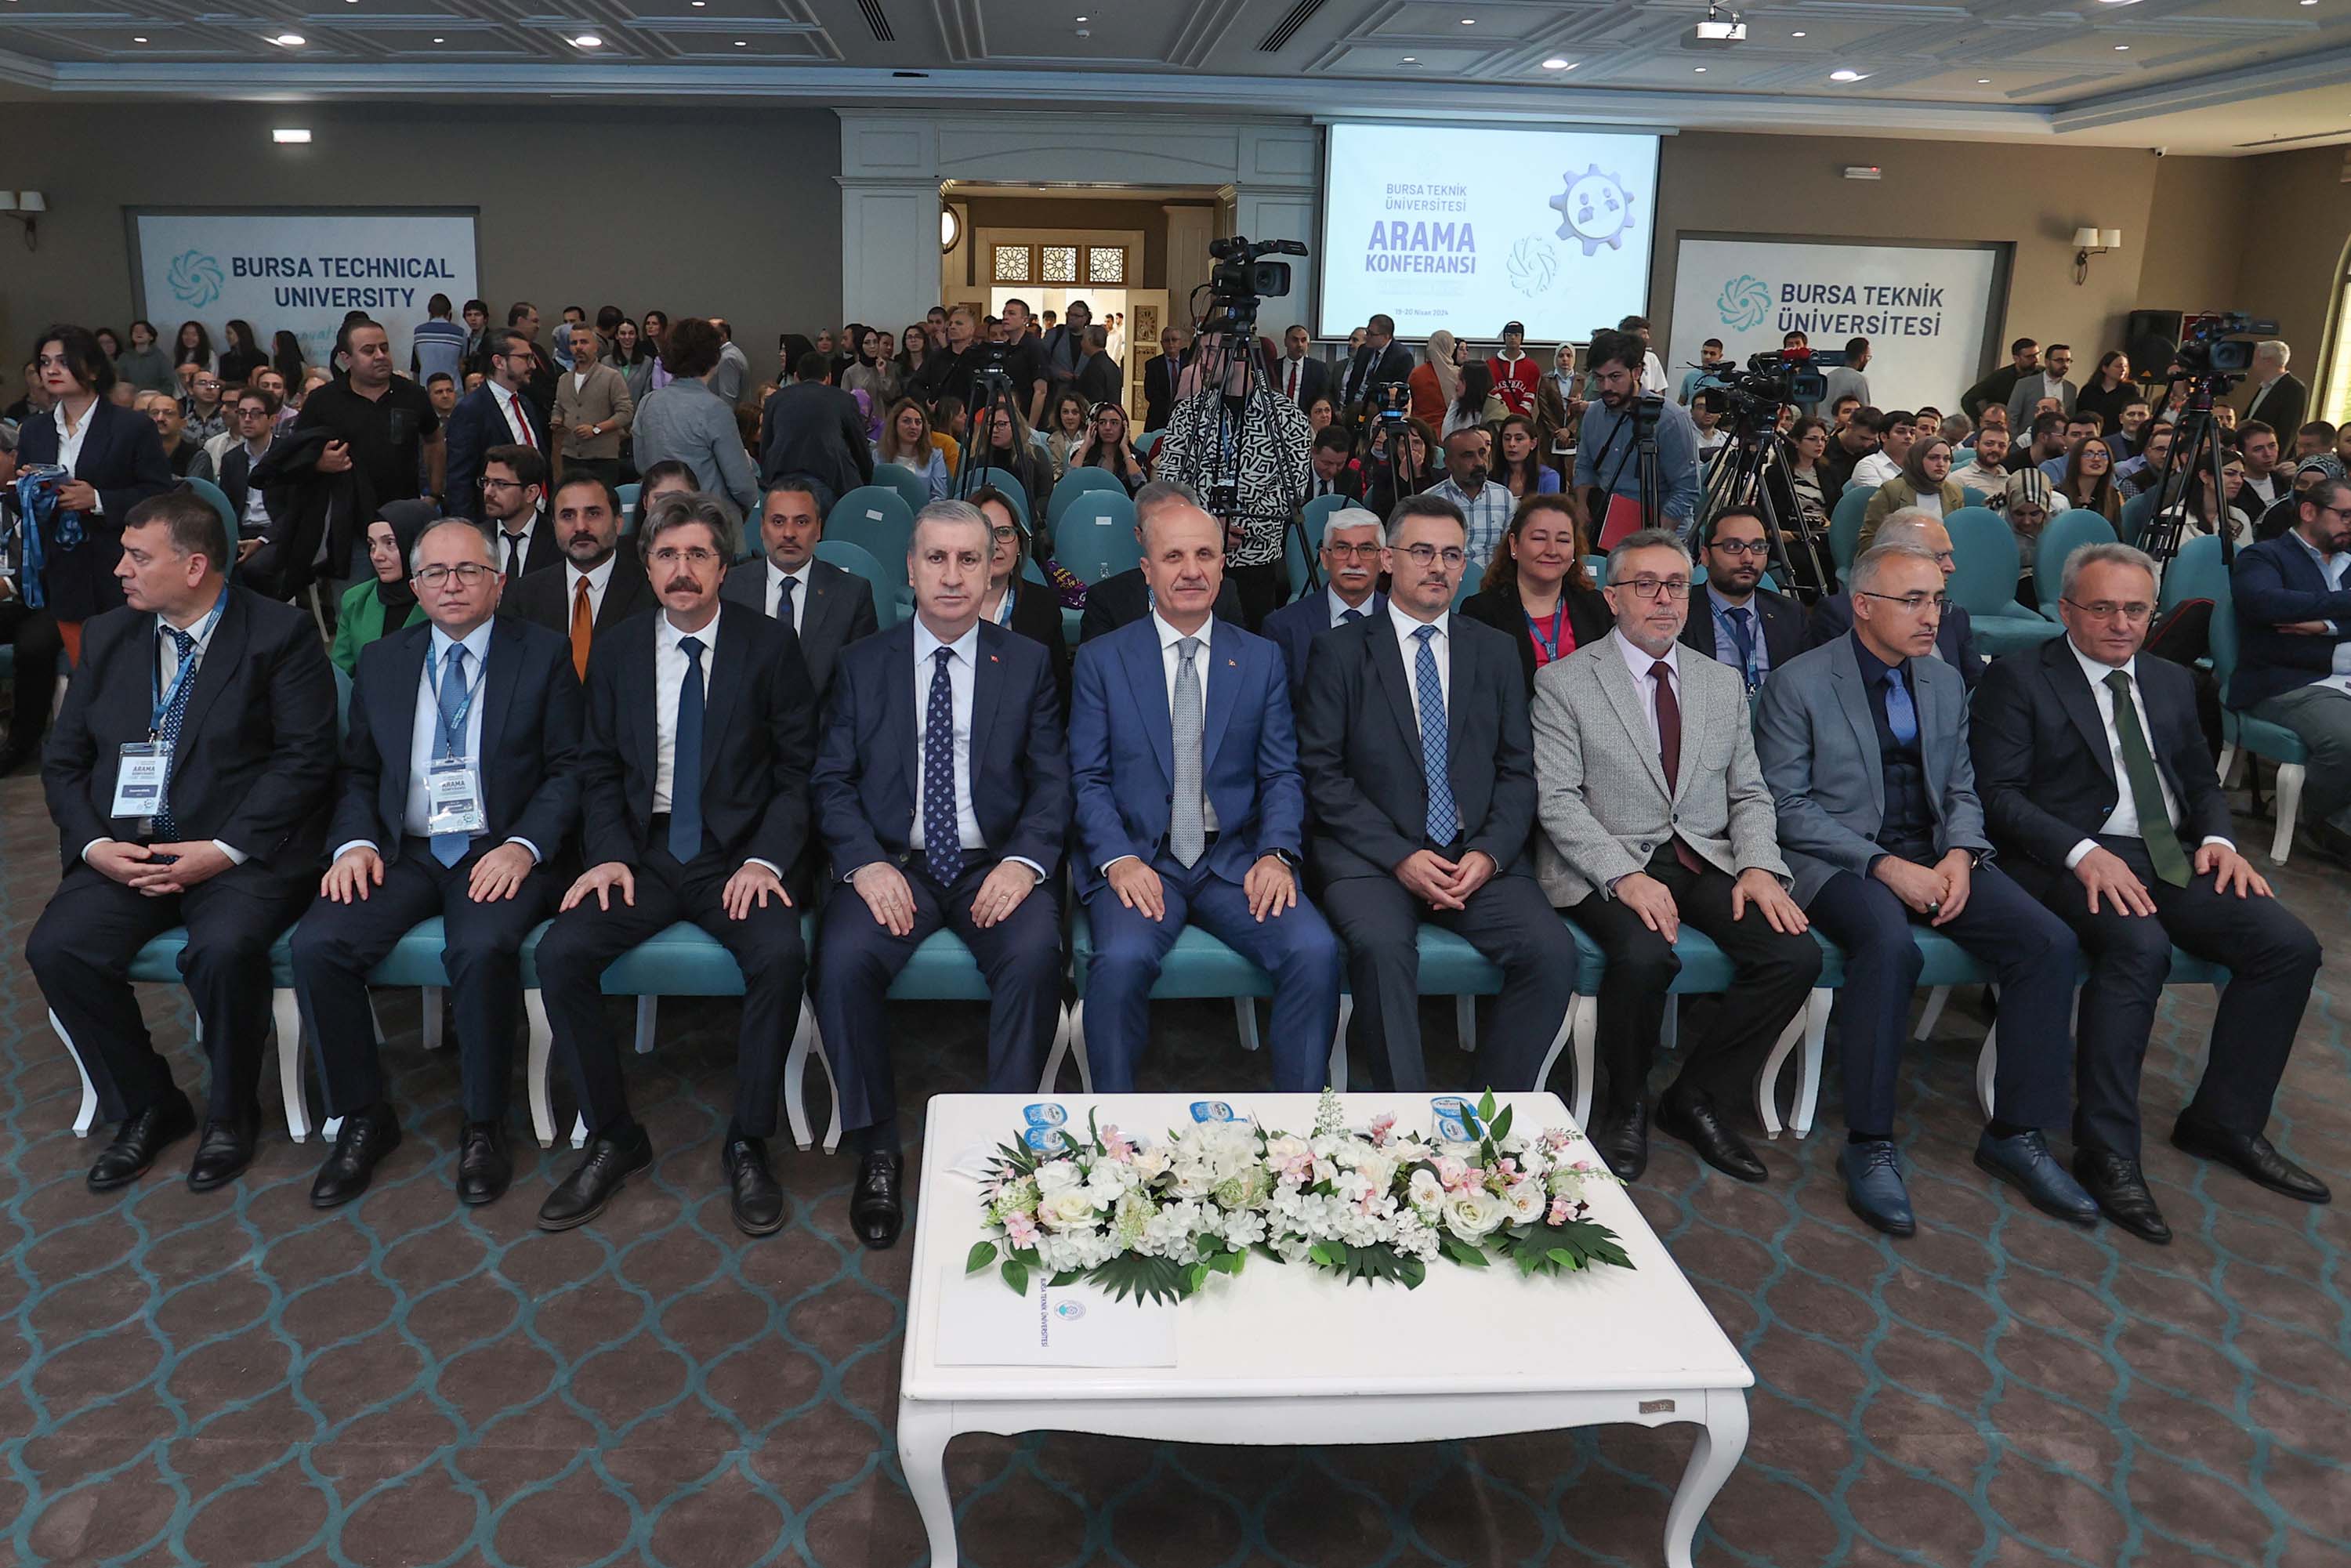 Vali Vekili Hamdi Bolat, Mimar Sinan Yerleşkesi'nde Yüzlerce Fikrin Paylaşıldığı Arama Konferansı'nda